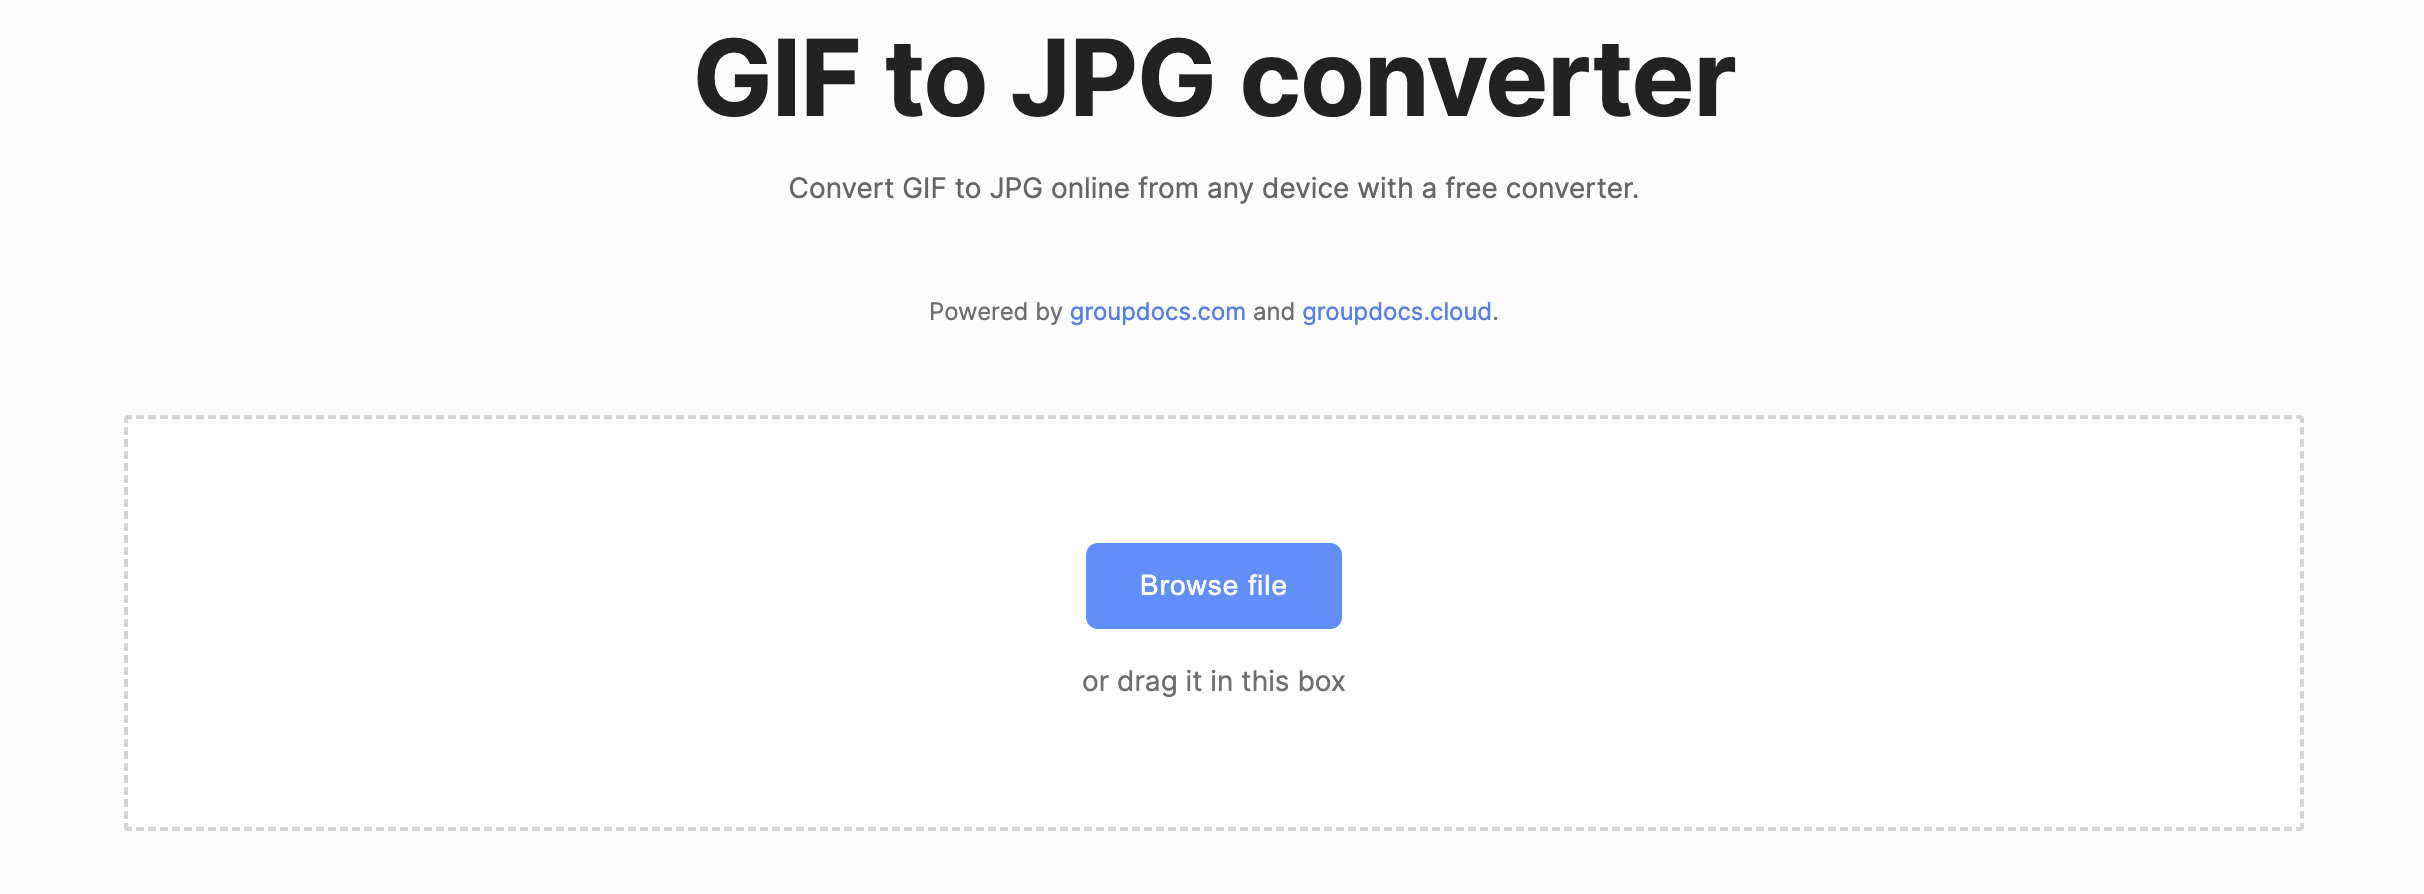 تبدیل آنلاین GIF به JPG